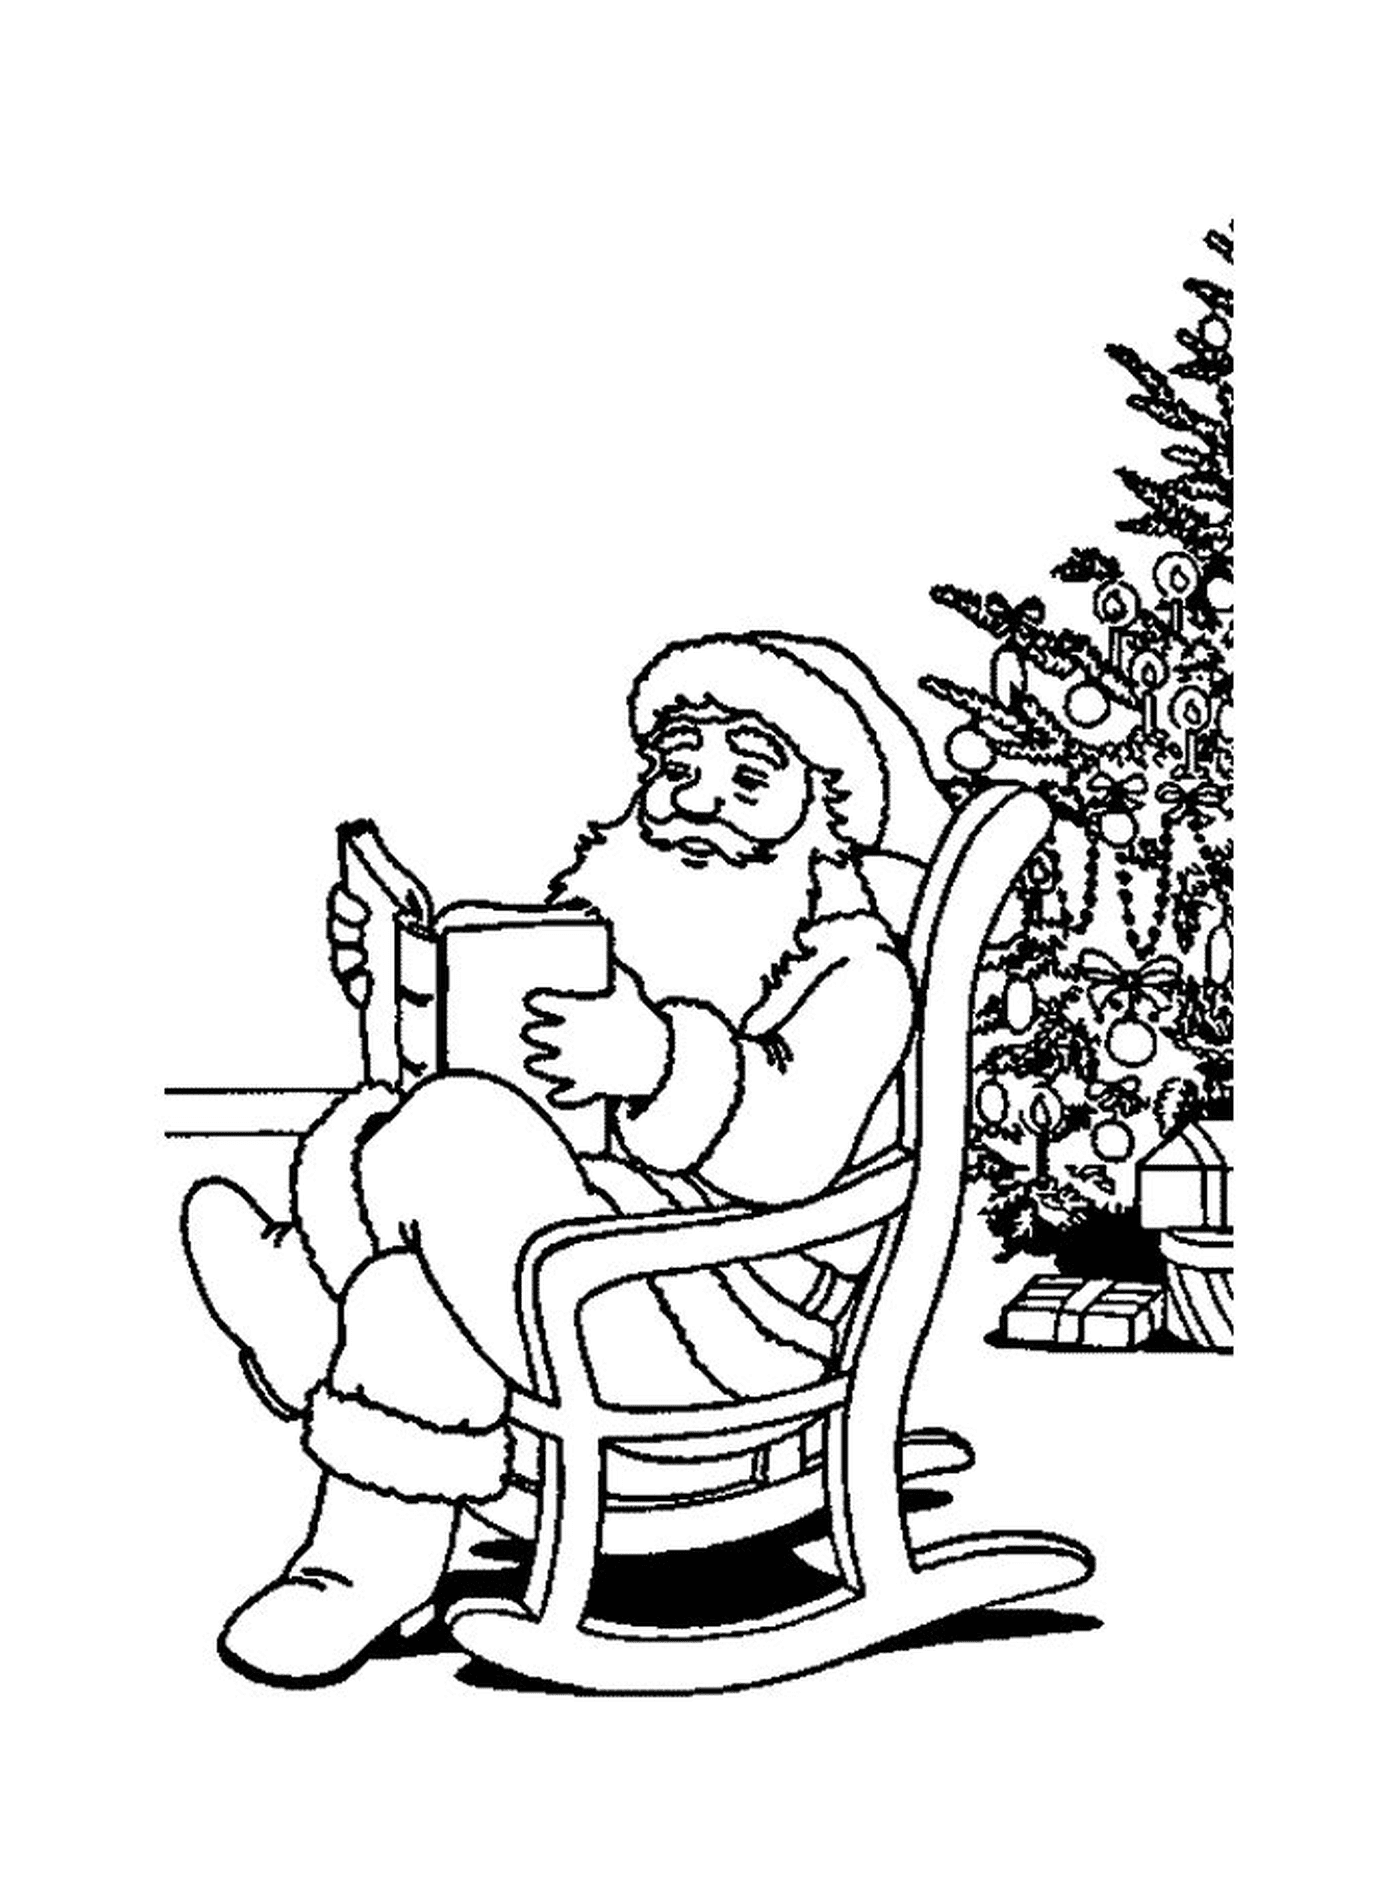  Santa leyó un libro junto a un árbol 